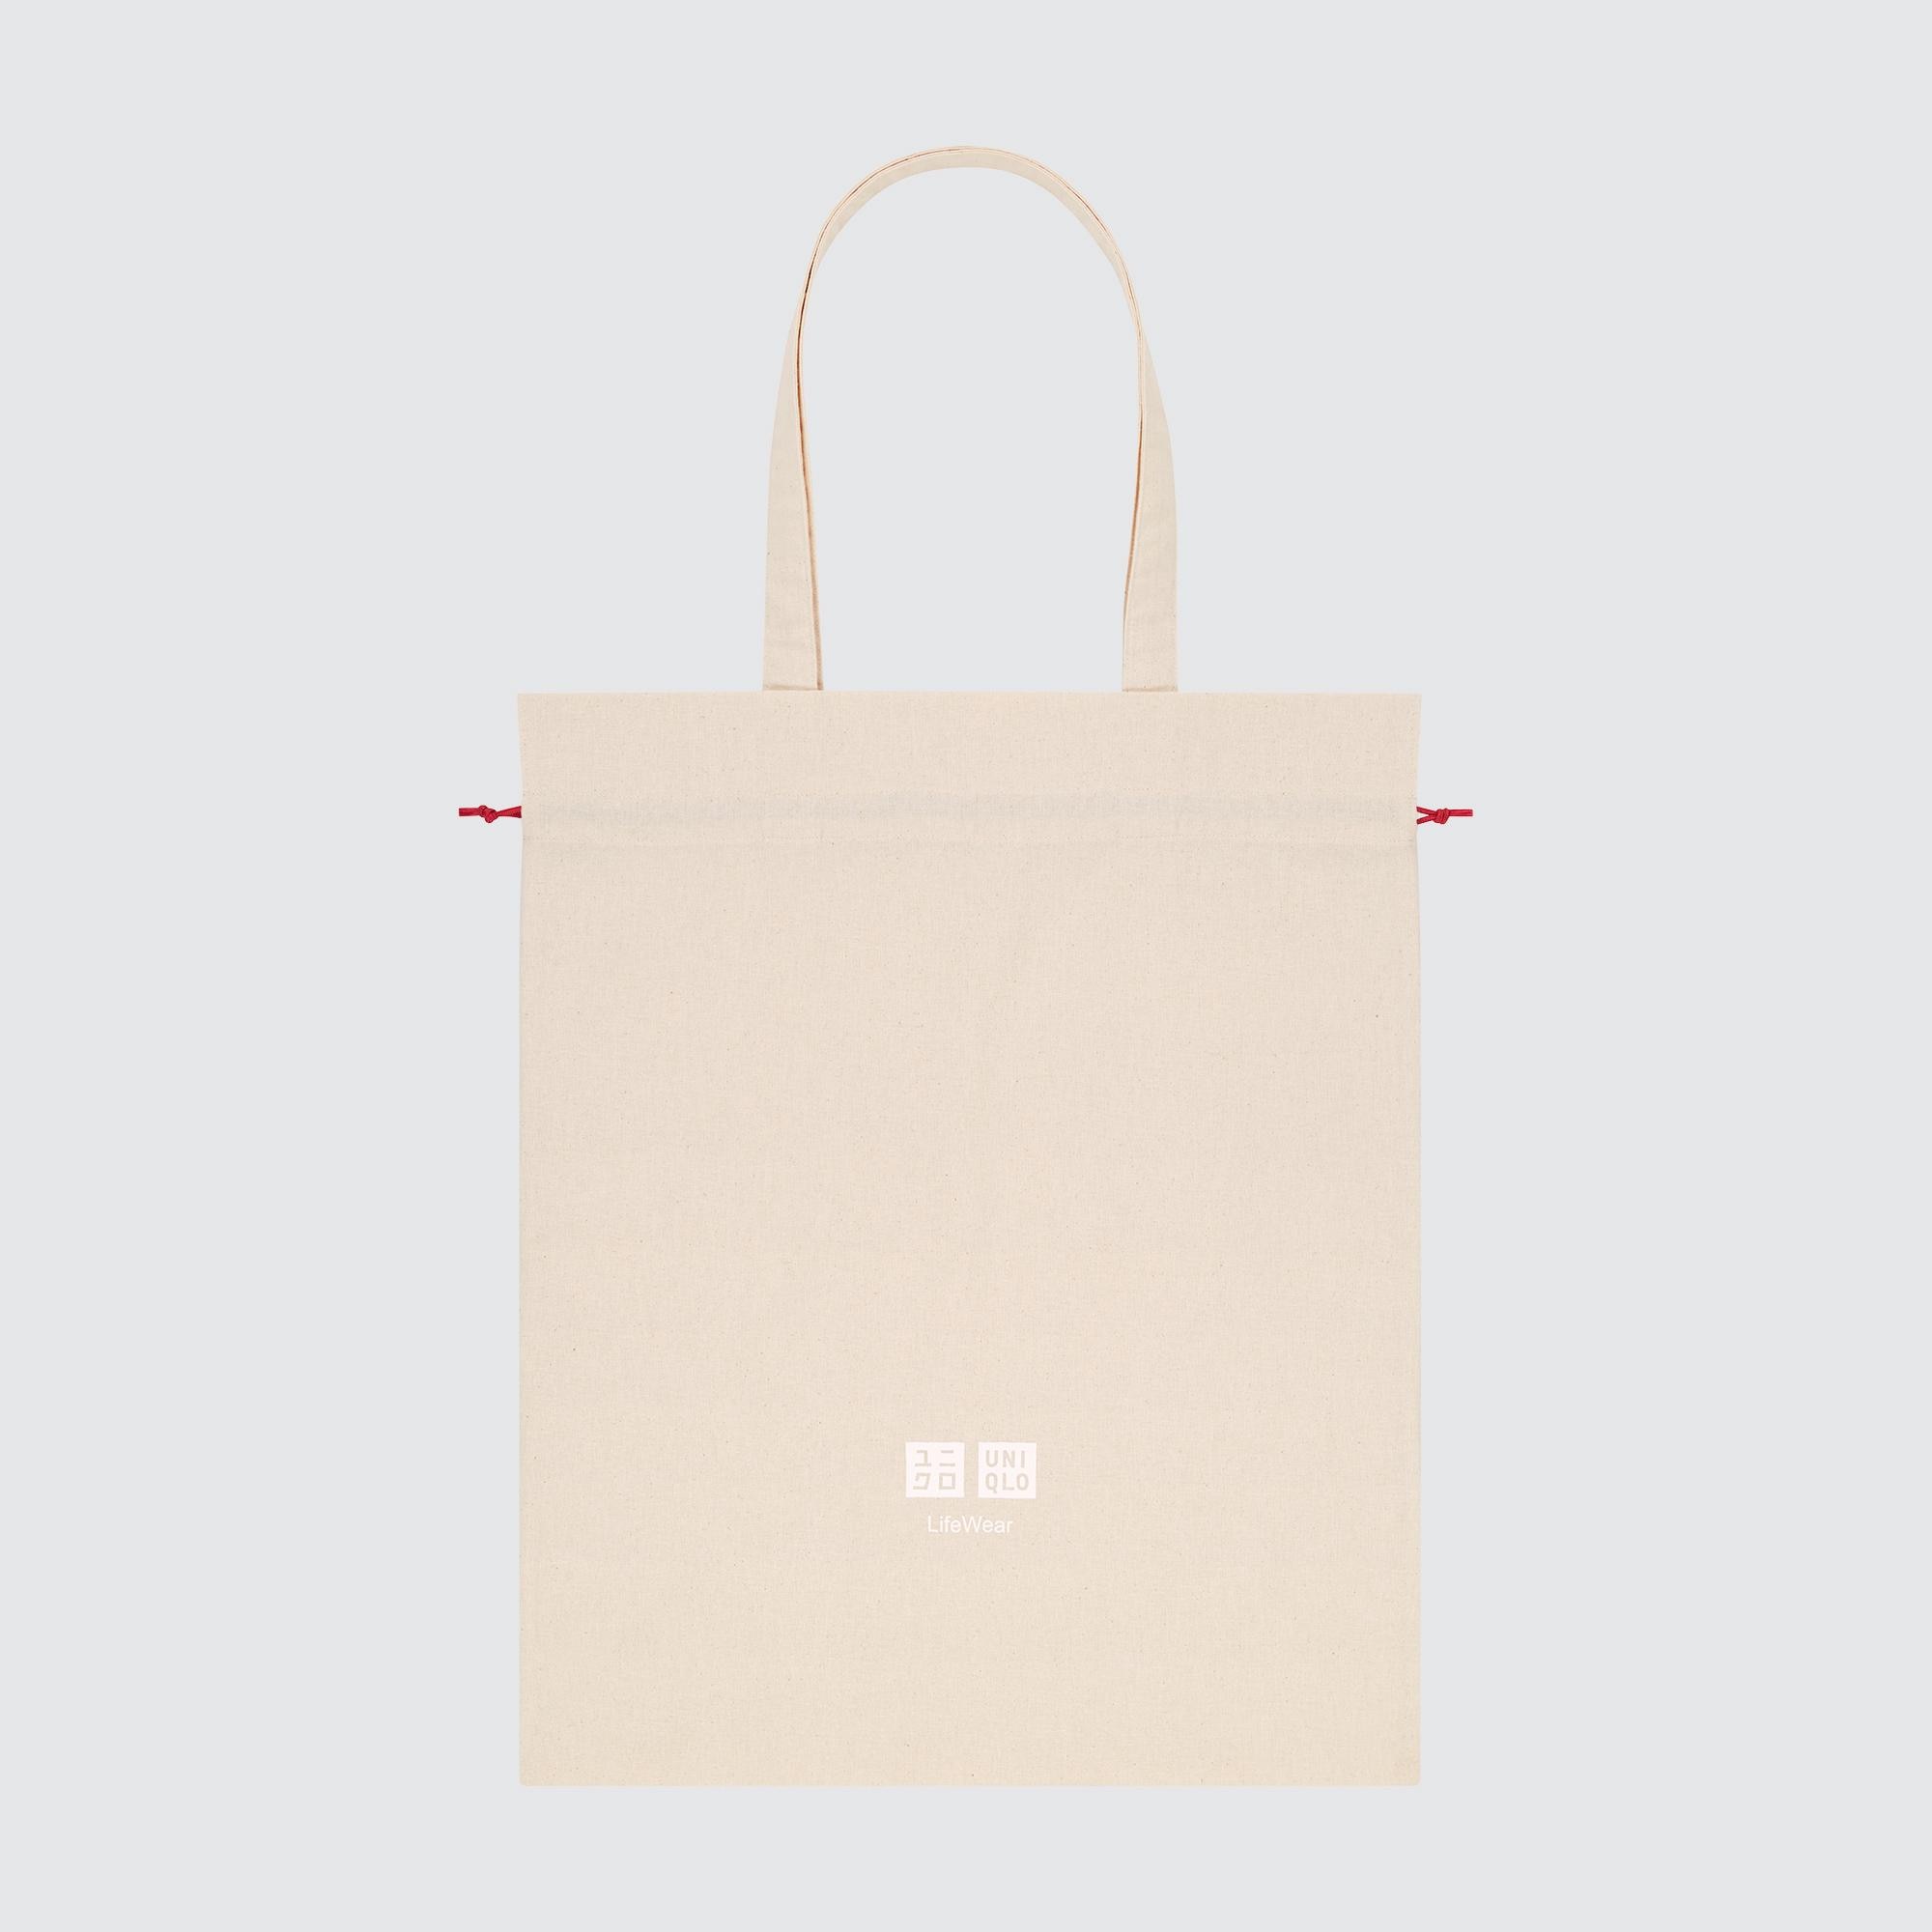 Uniqlo Releases Canvas Tote Bag in New Designs